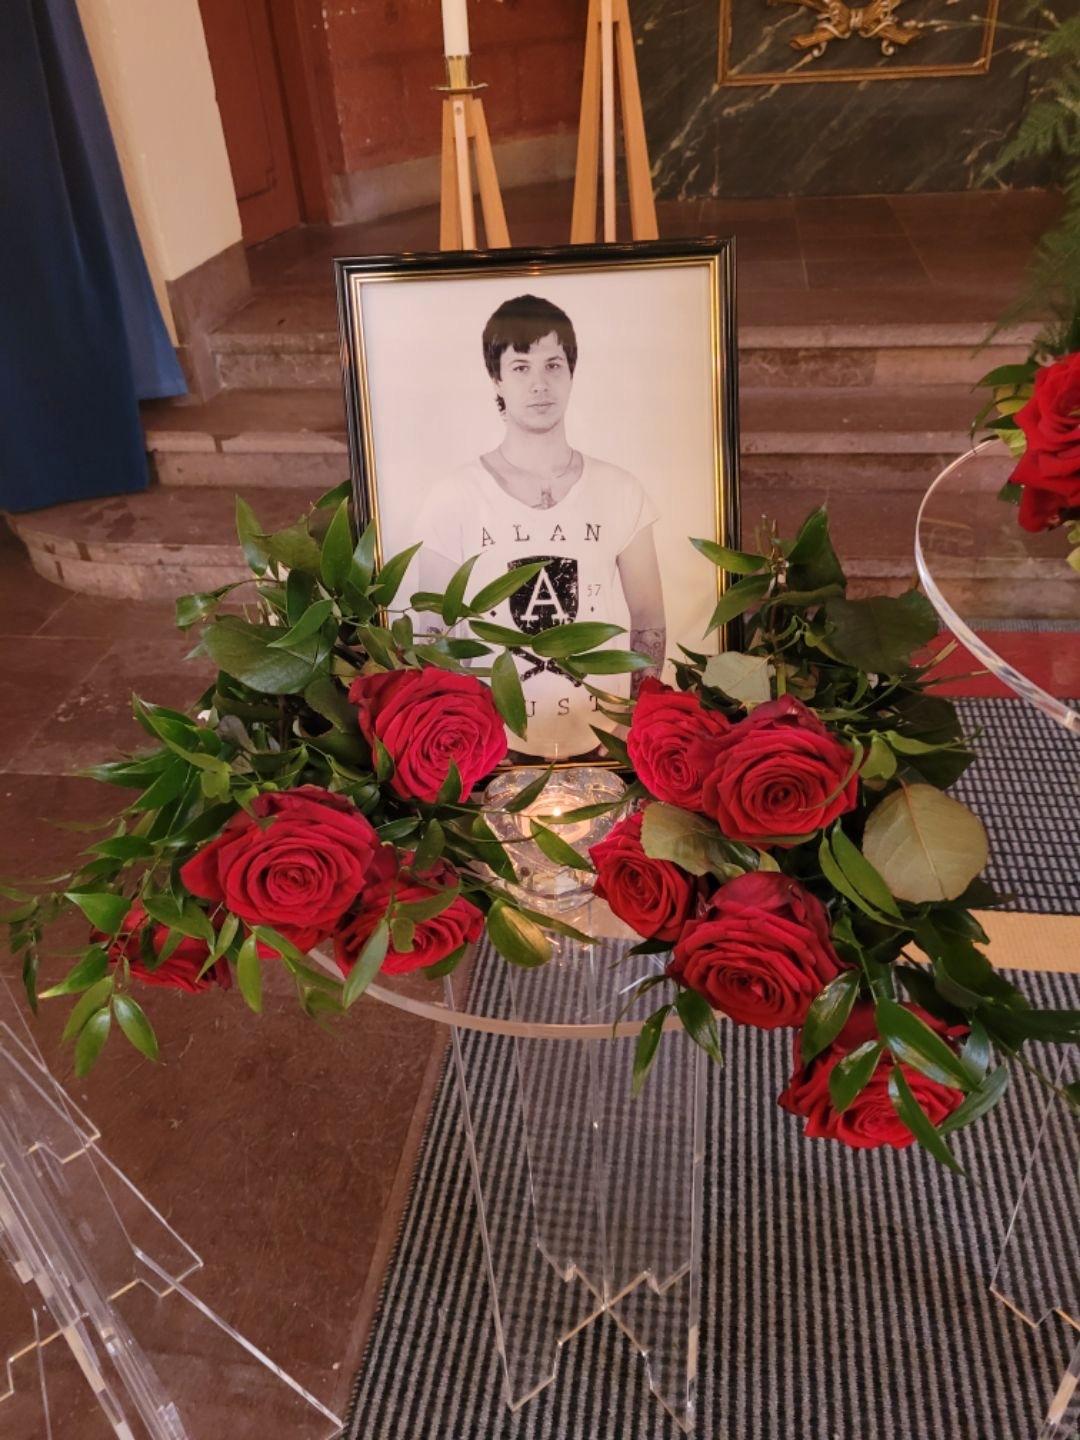 Den 26 oktober 2021 sa Emils familj farväl till honom på Norra kyrkogården i Kalmar. Hans aska spreds sedan i en minneslund i hans barndomsort Kramfors. Under avskedet spelades en av Emils favoritlåtar, Nessun dorma med trumpetaren Magnus Johansson. 